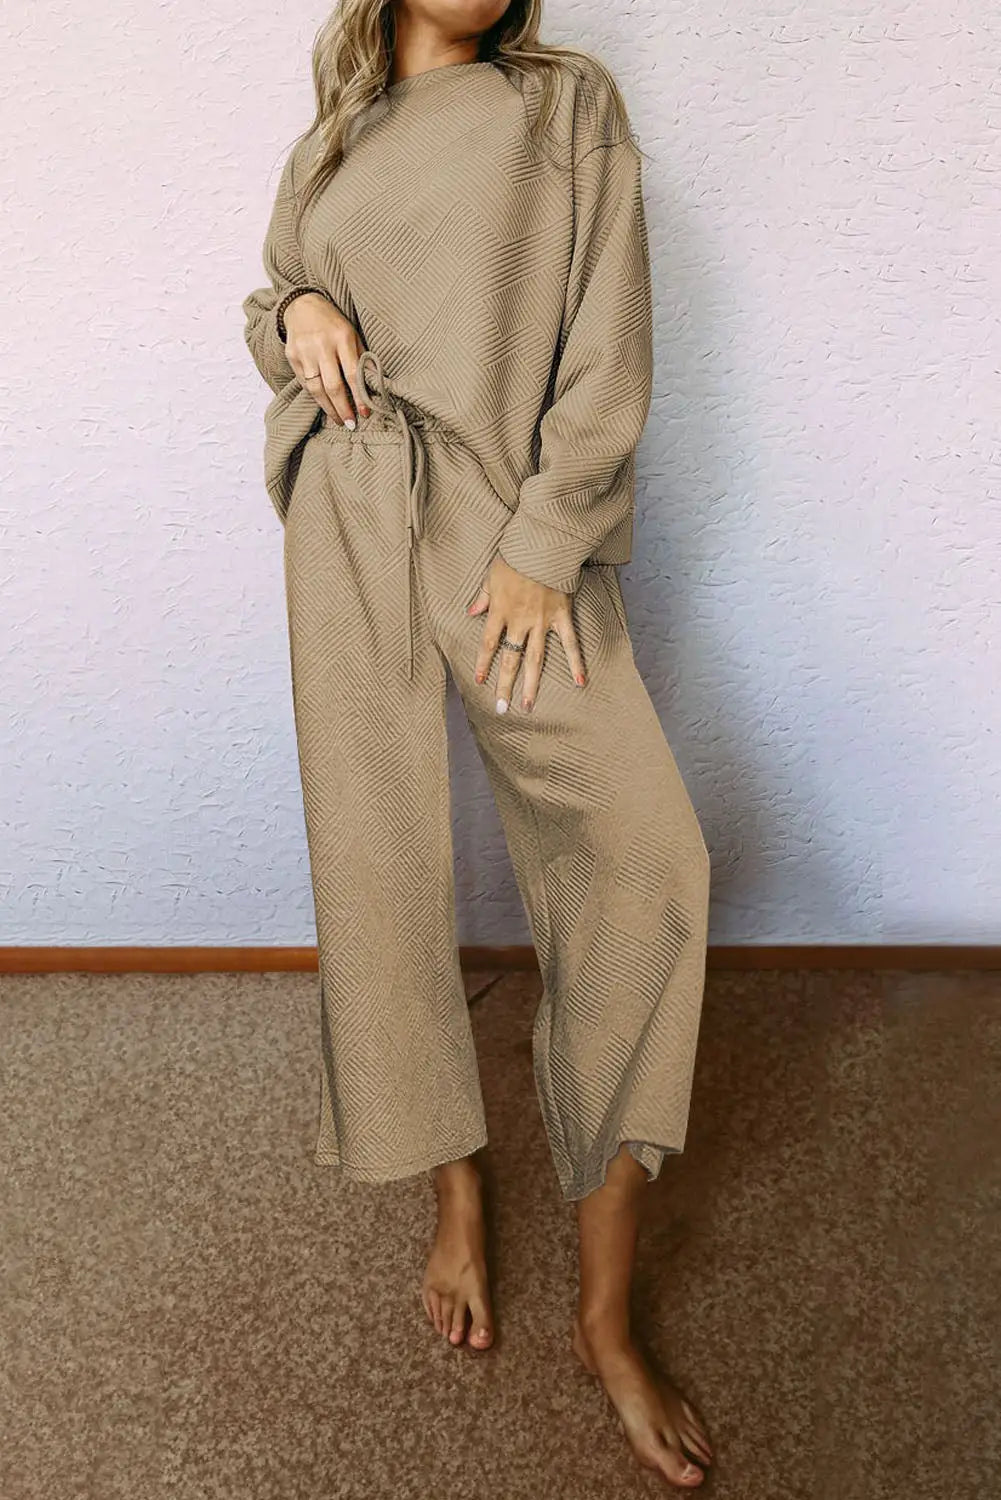 Khaki ultra loose textured 2pcs slouchy outfit - apricot khaki / 2xl / 95% polyester + 5% elastane - pants sets